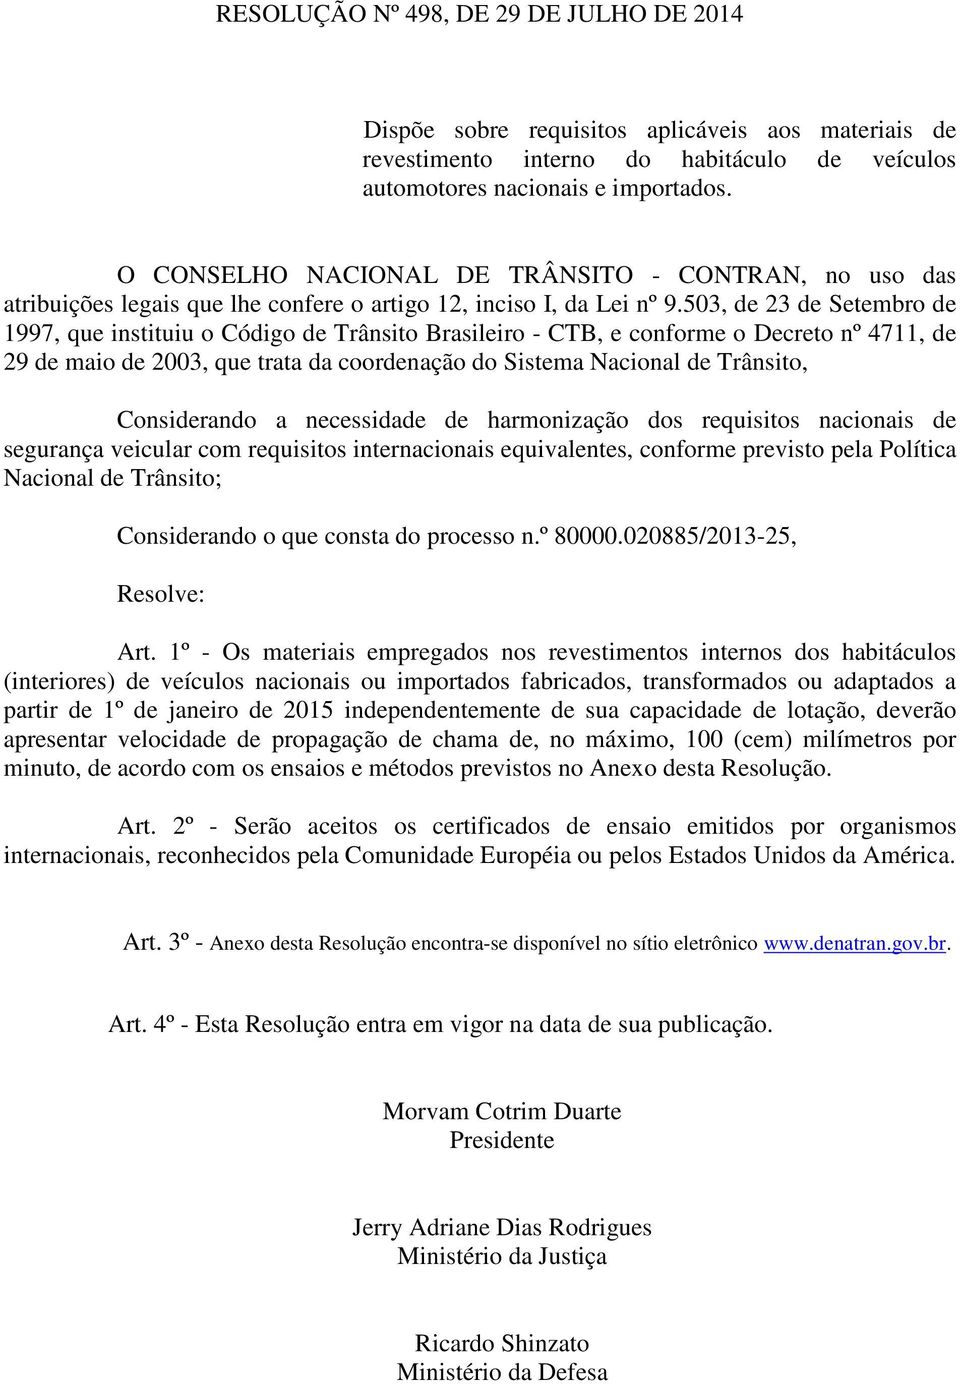 503, de 23 de Setembro de 1997, que instituiu o Código de Trânsito Brasileiro - CTB, e conforme o Decreto nº 4711, de 29 de maio de 2003, que trata da coordenação do Sistema Nacional de Trânsito,